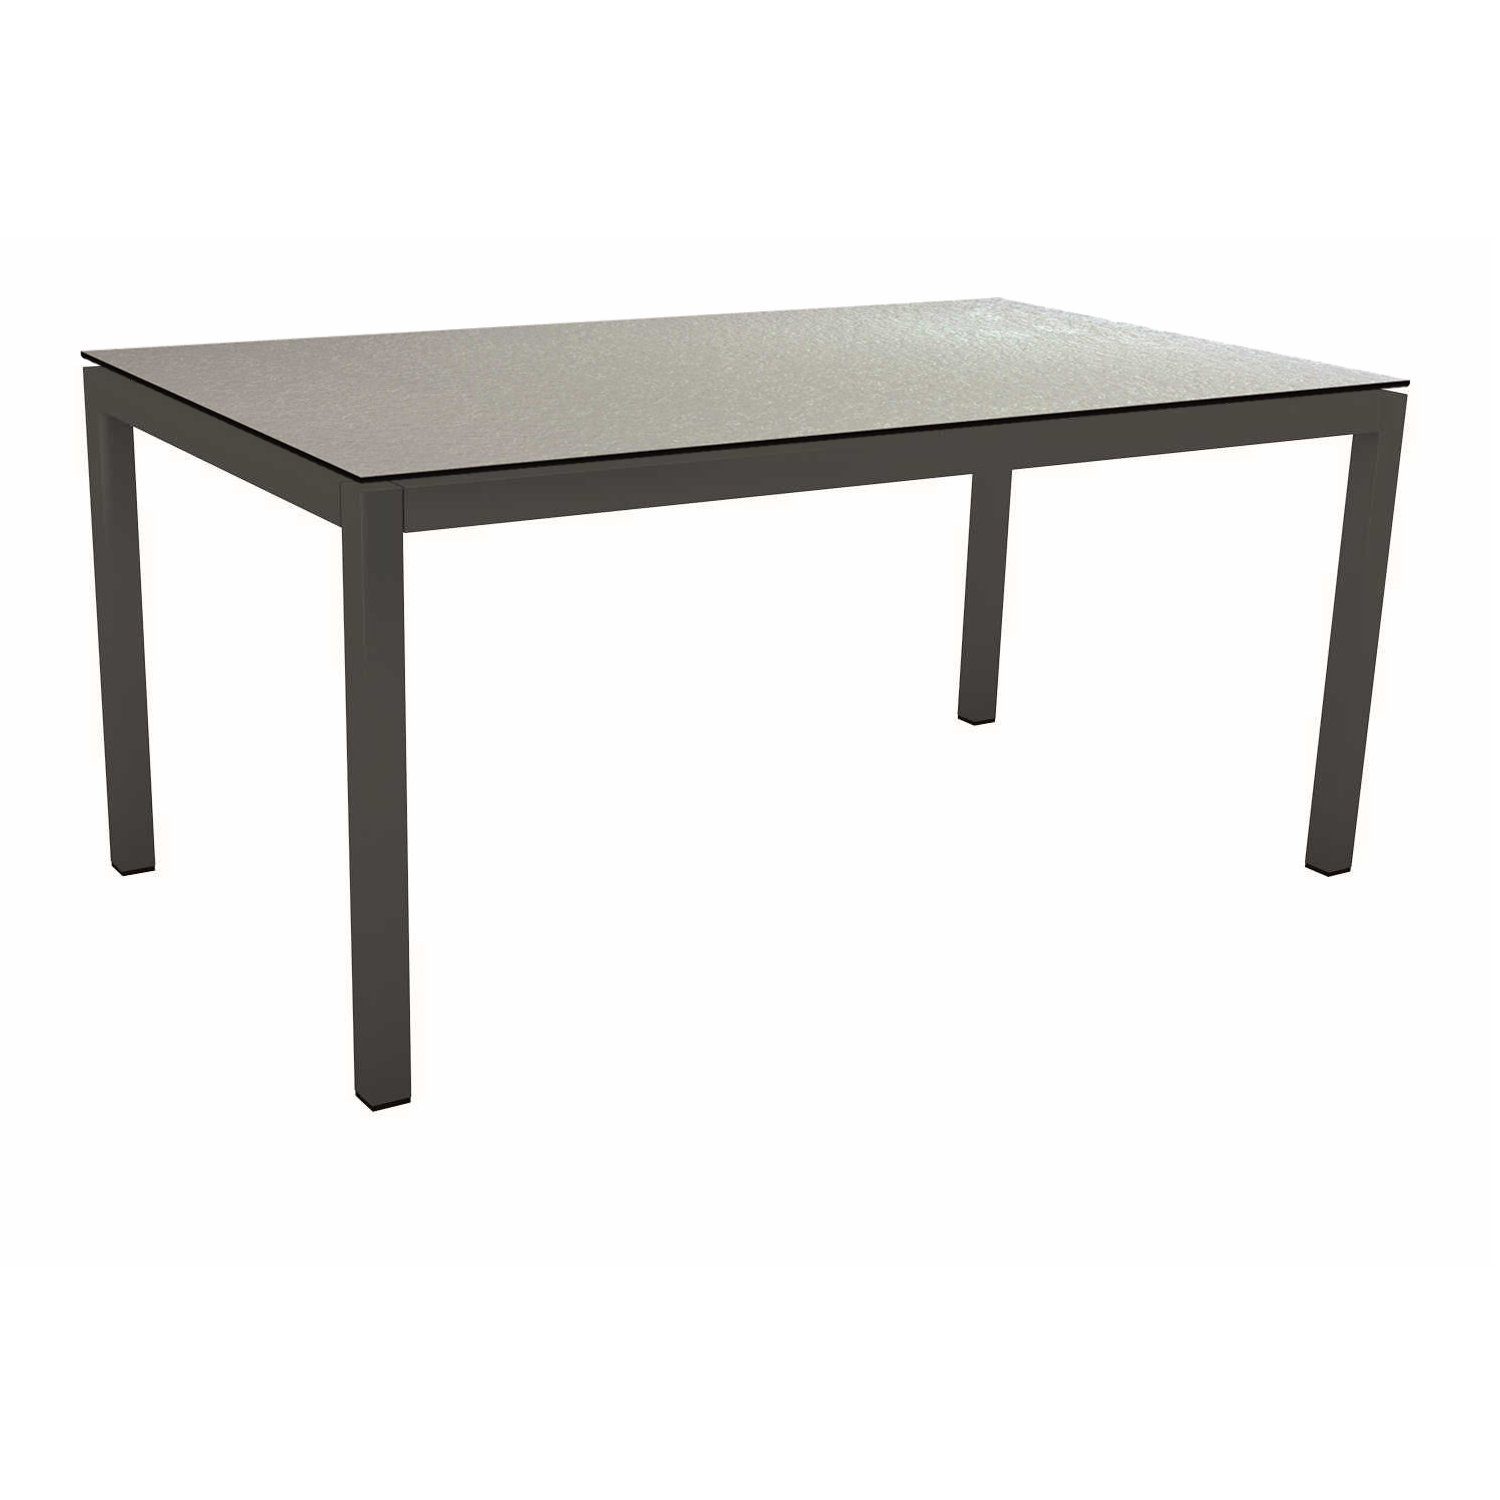 Stern Tischsystem Gartentisch, Gestell Aluminium anthrazit, Tischplatte HPL Uni grau, Maße: 130x80 cm